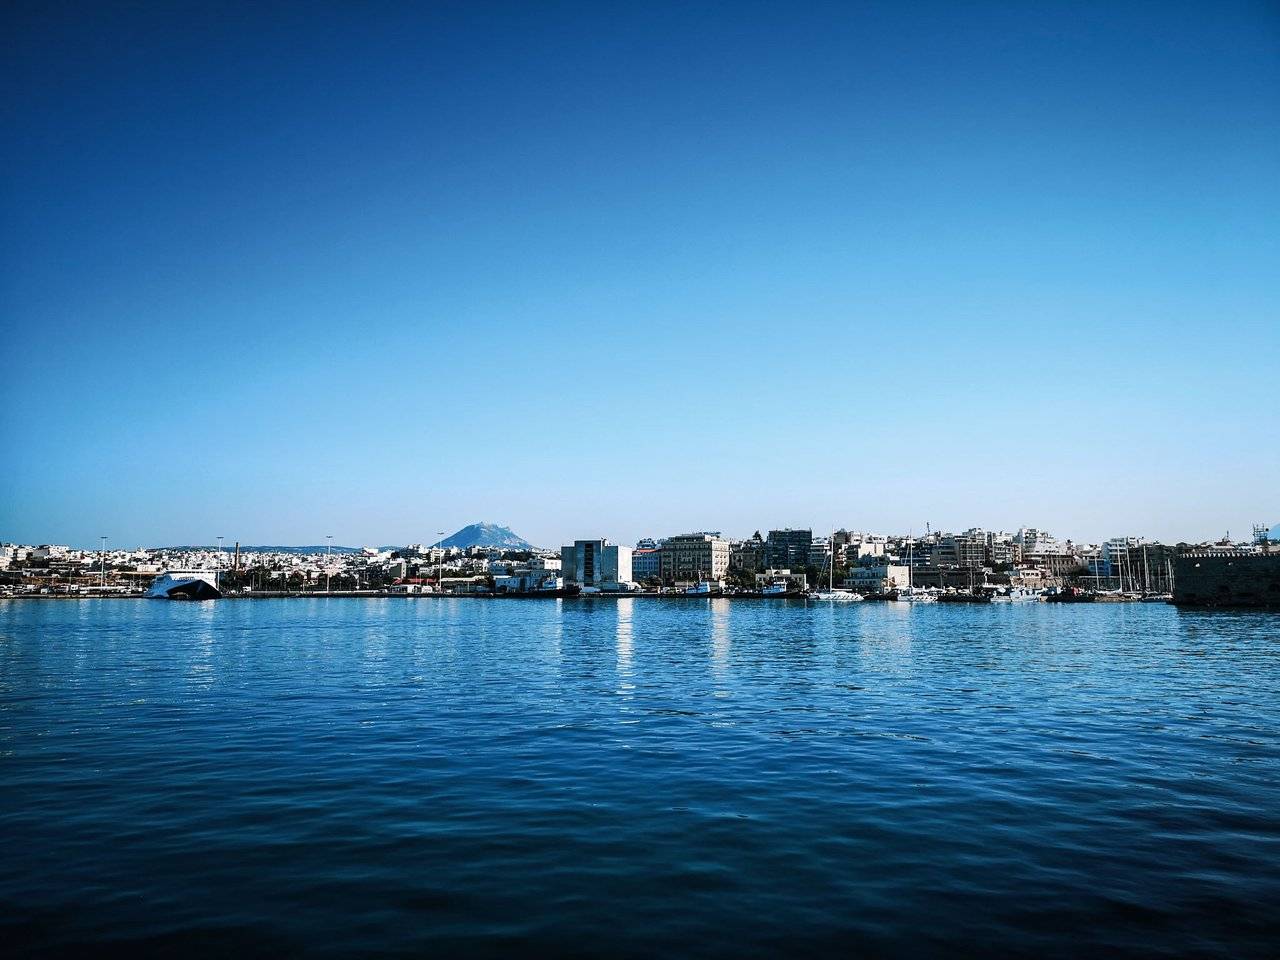 heraklion-harbor-panorama-with-mount-juktas.jpeg